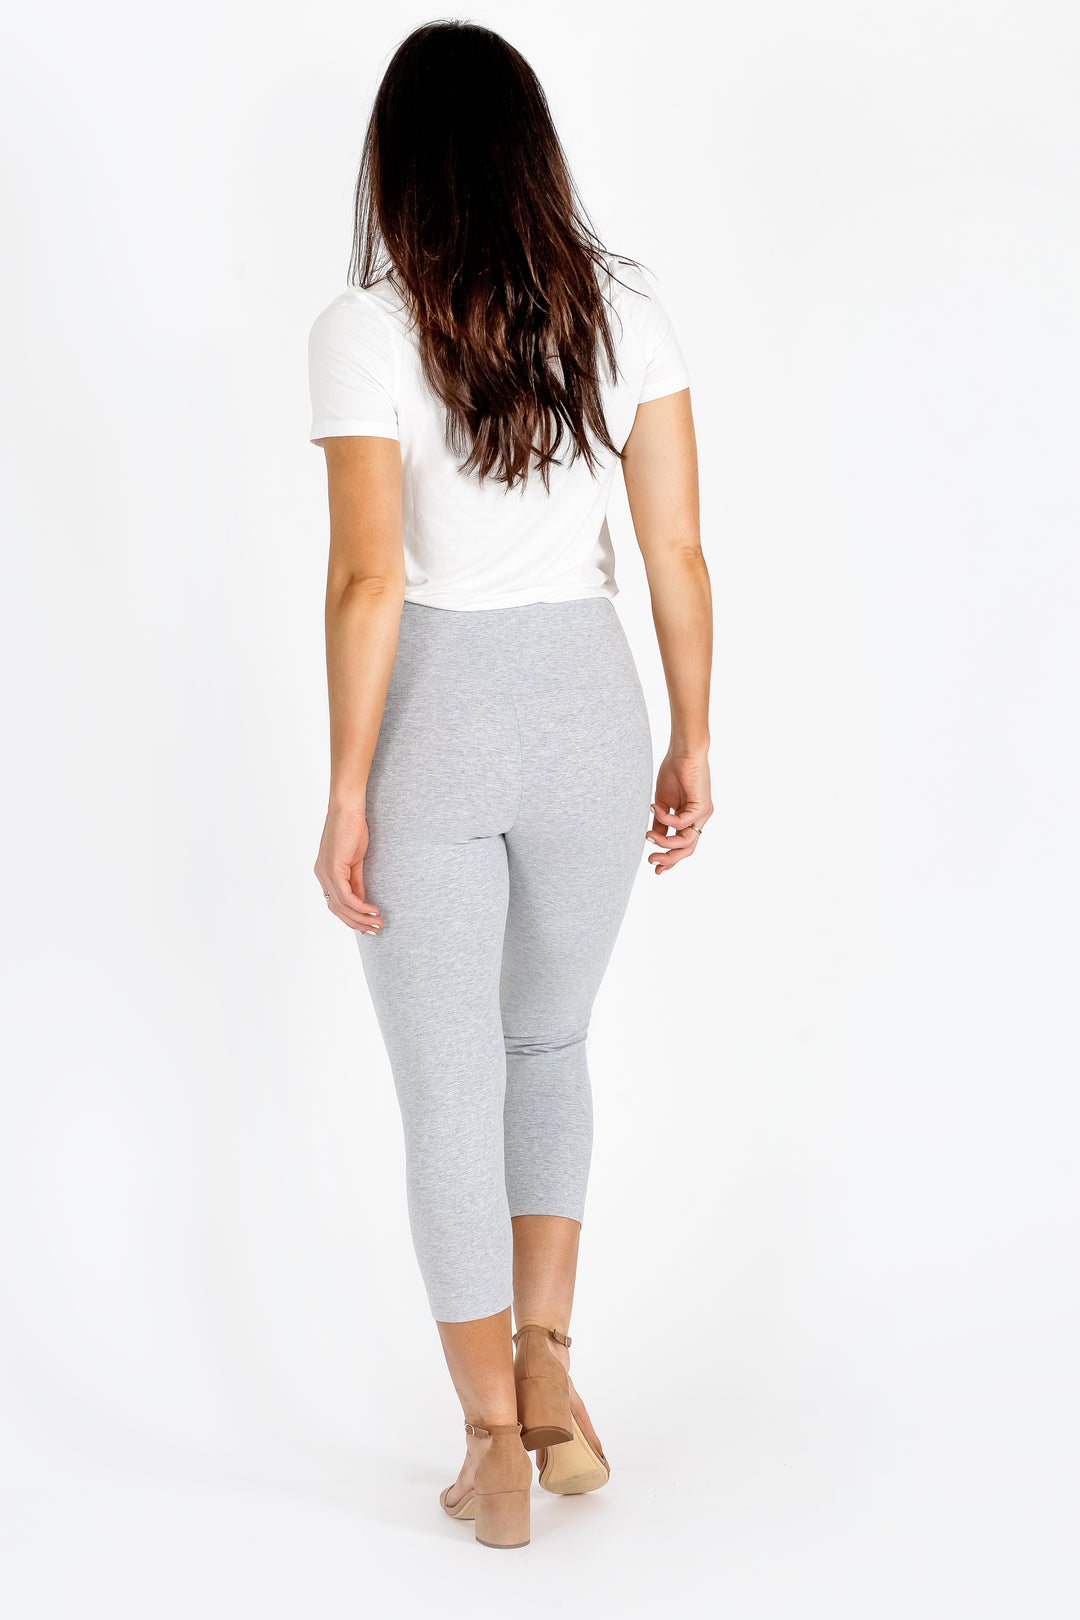 LOVE AND FIT Guardian Capri Leggings - ShopStyle Plus Size Pants